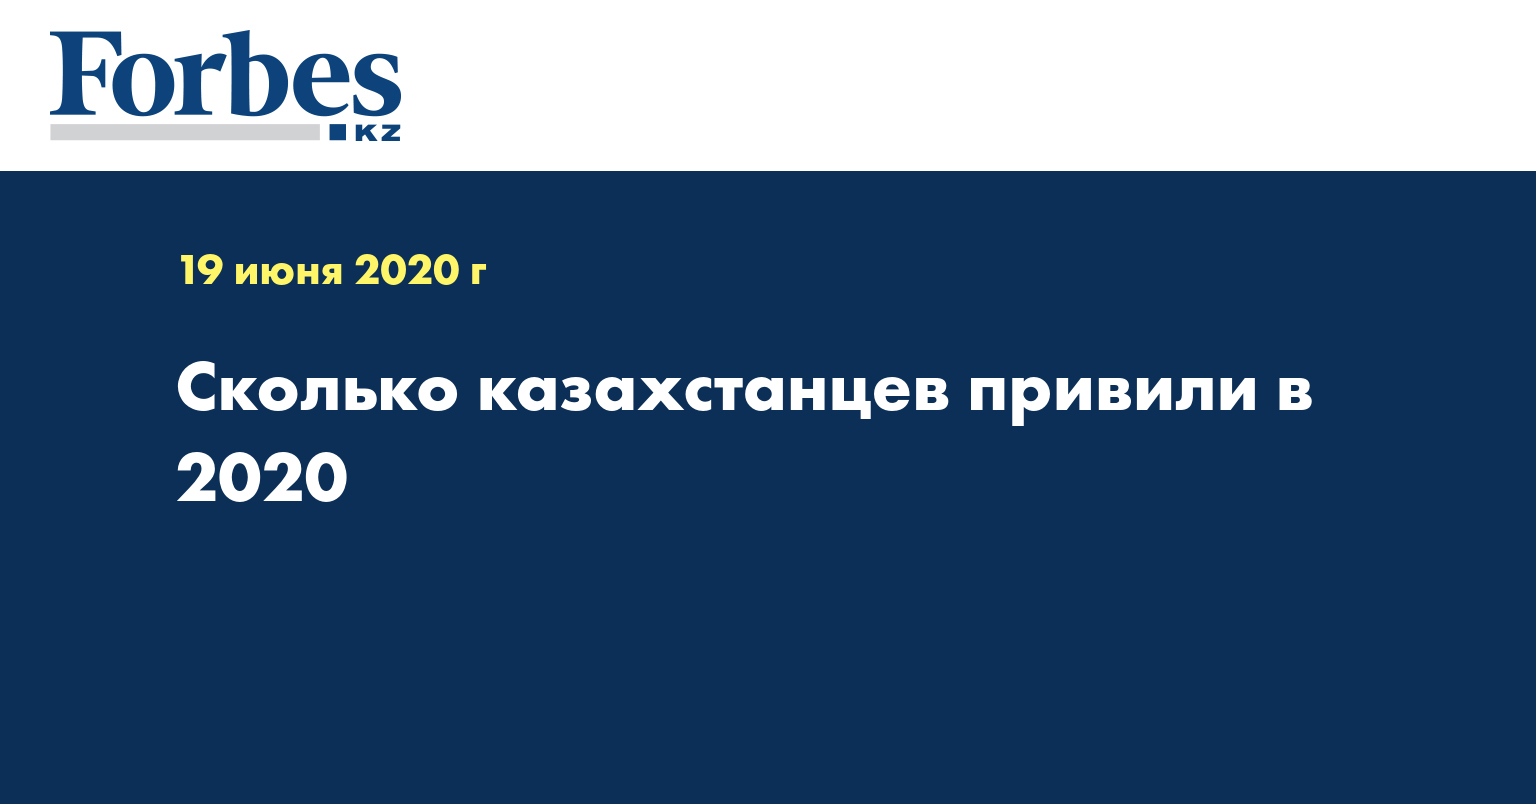 Сколько казахстанцев привили в 2020